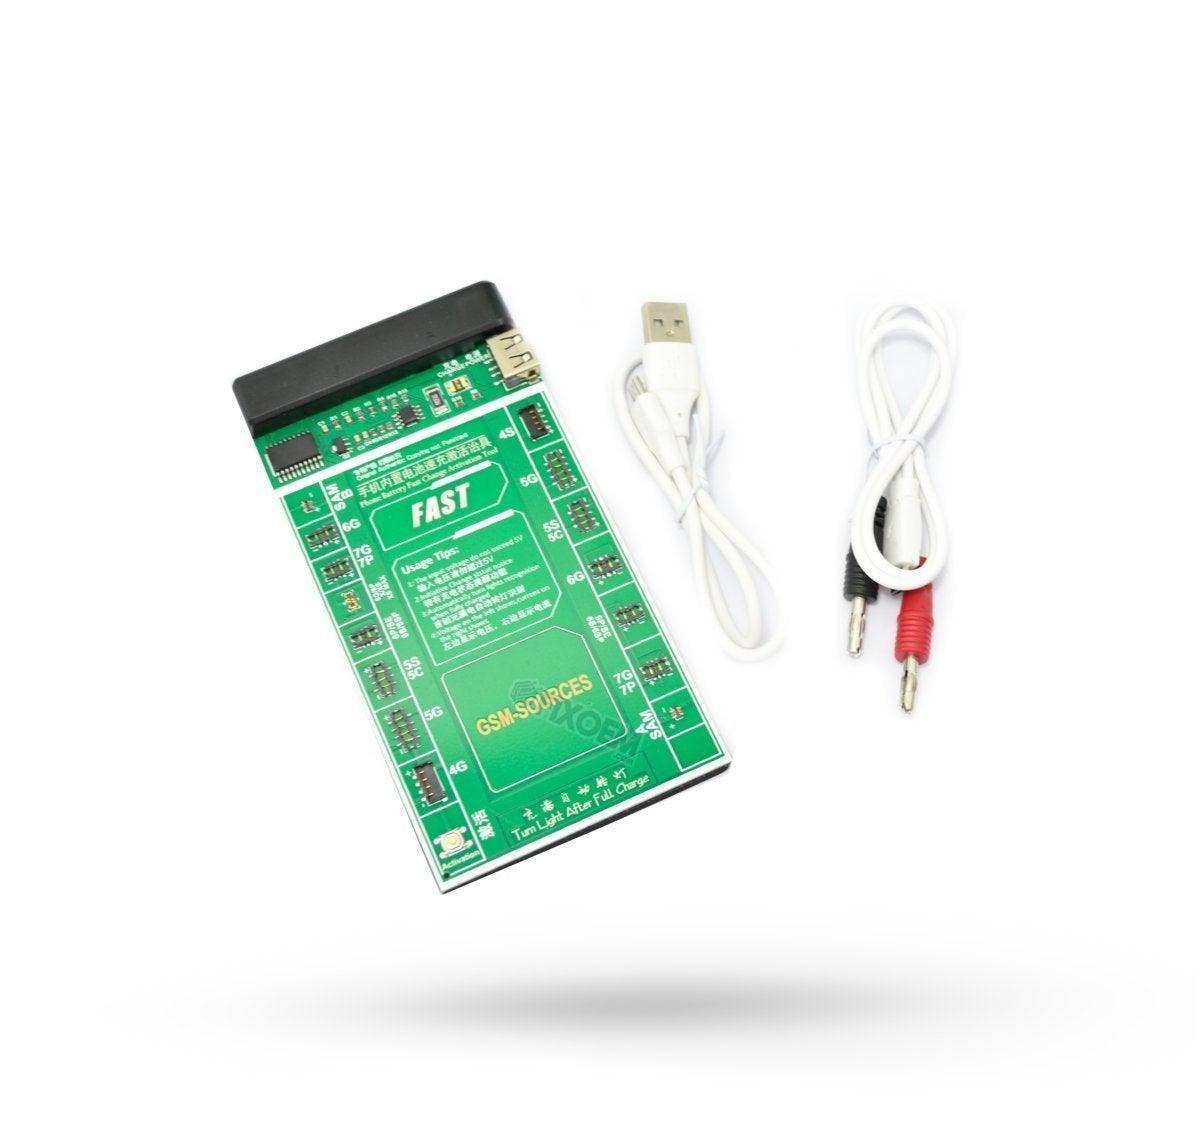 Activador Baterias Celulares Compatible Iphone. a solo $ 470.00 Refaccion y puestos celulares, refurbish y microelectronica.- FixOEM